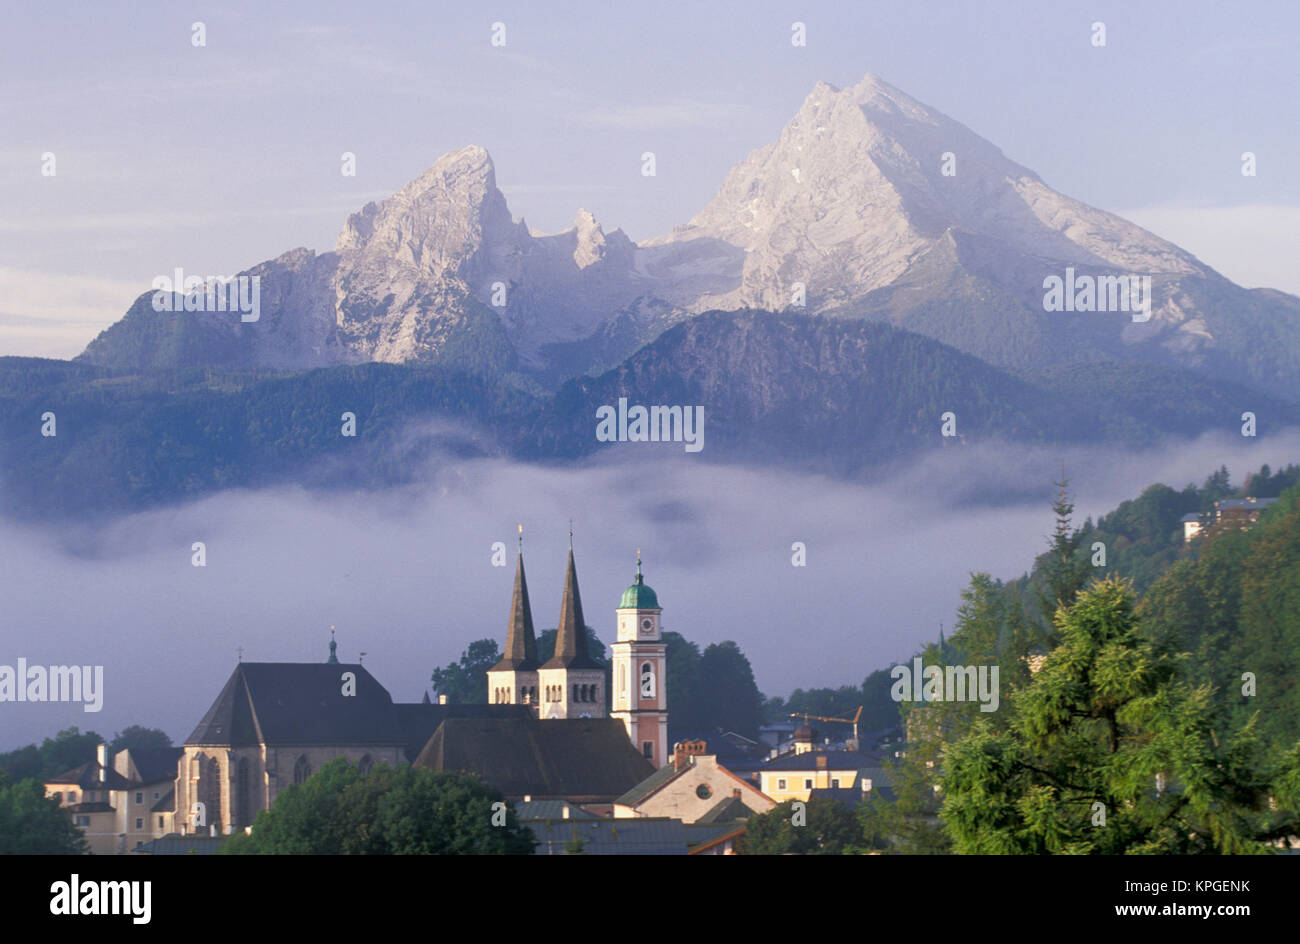 Alemania, Berchtesgaden. Campanarios de Saint Andrews y San Pedro en la niebla se disipa bajo Watzman montaña. Foto de stock